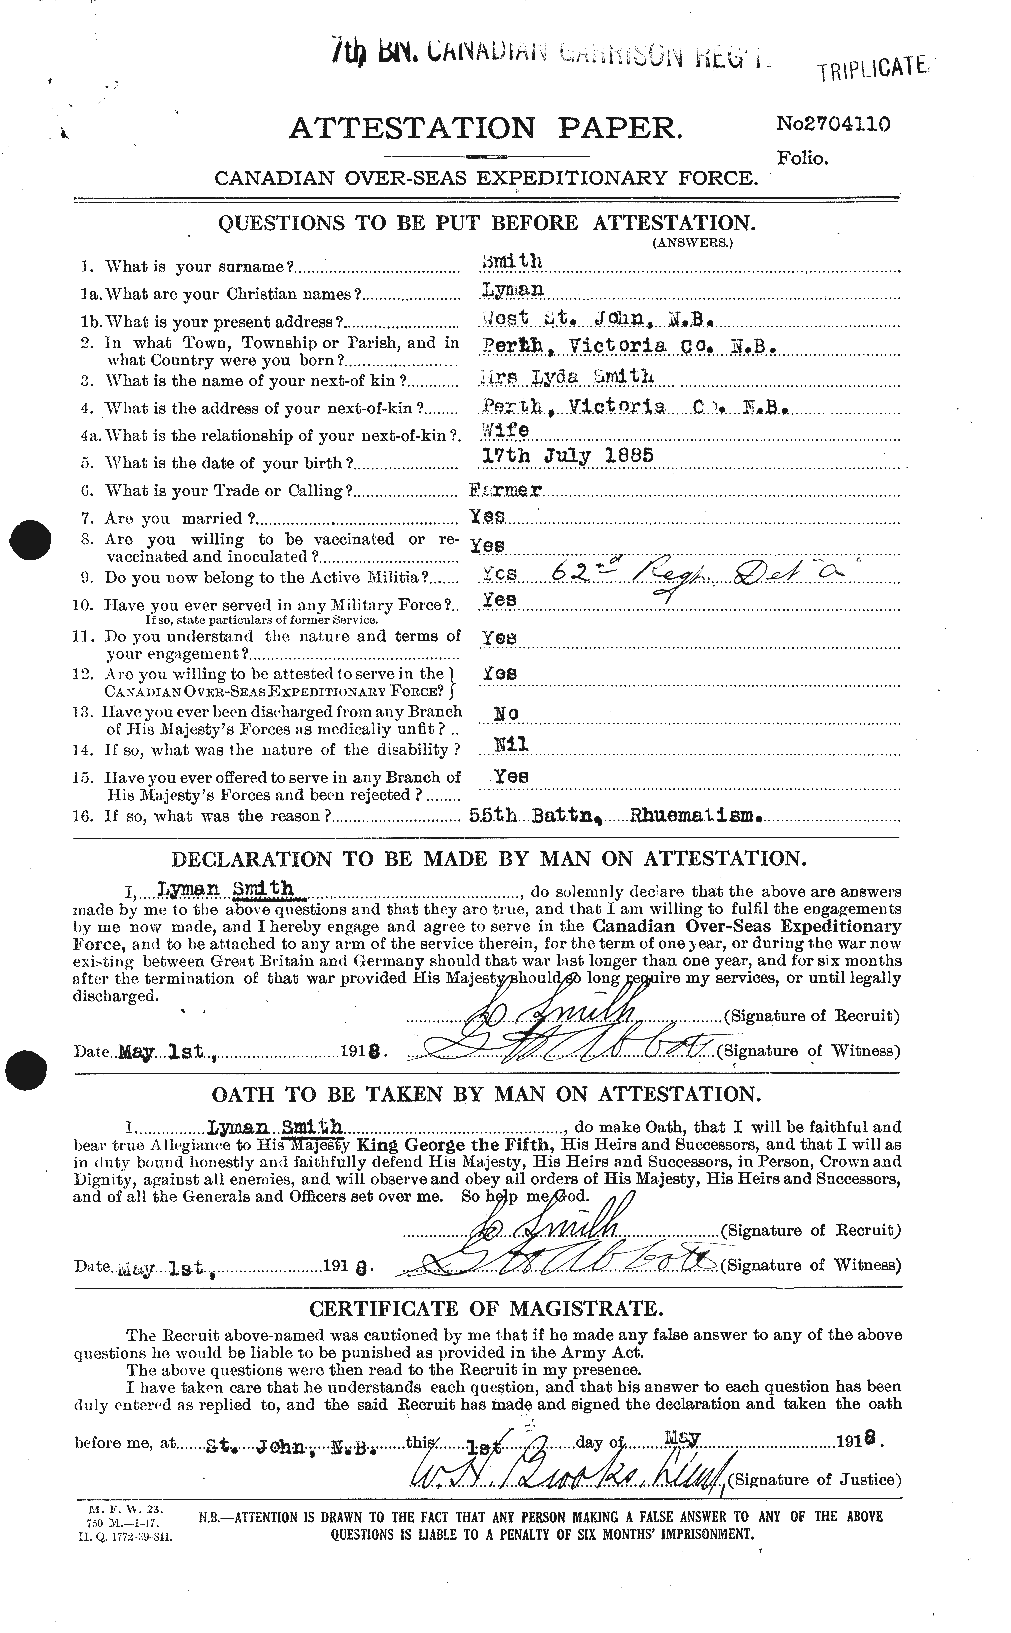 Dossiers du Personnel de la Première Guerre mondiale - CEC 104807a